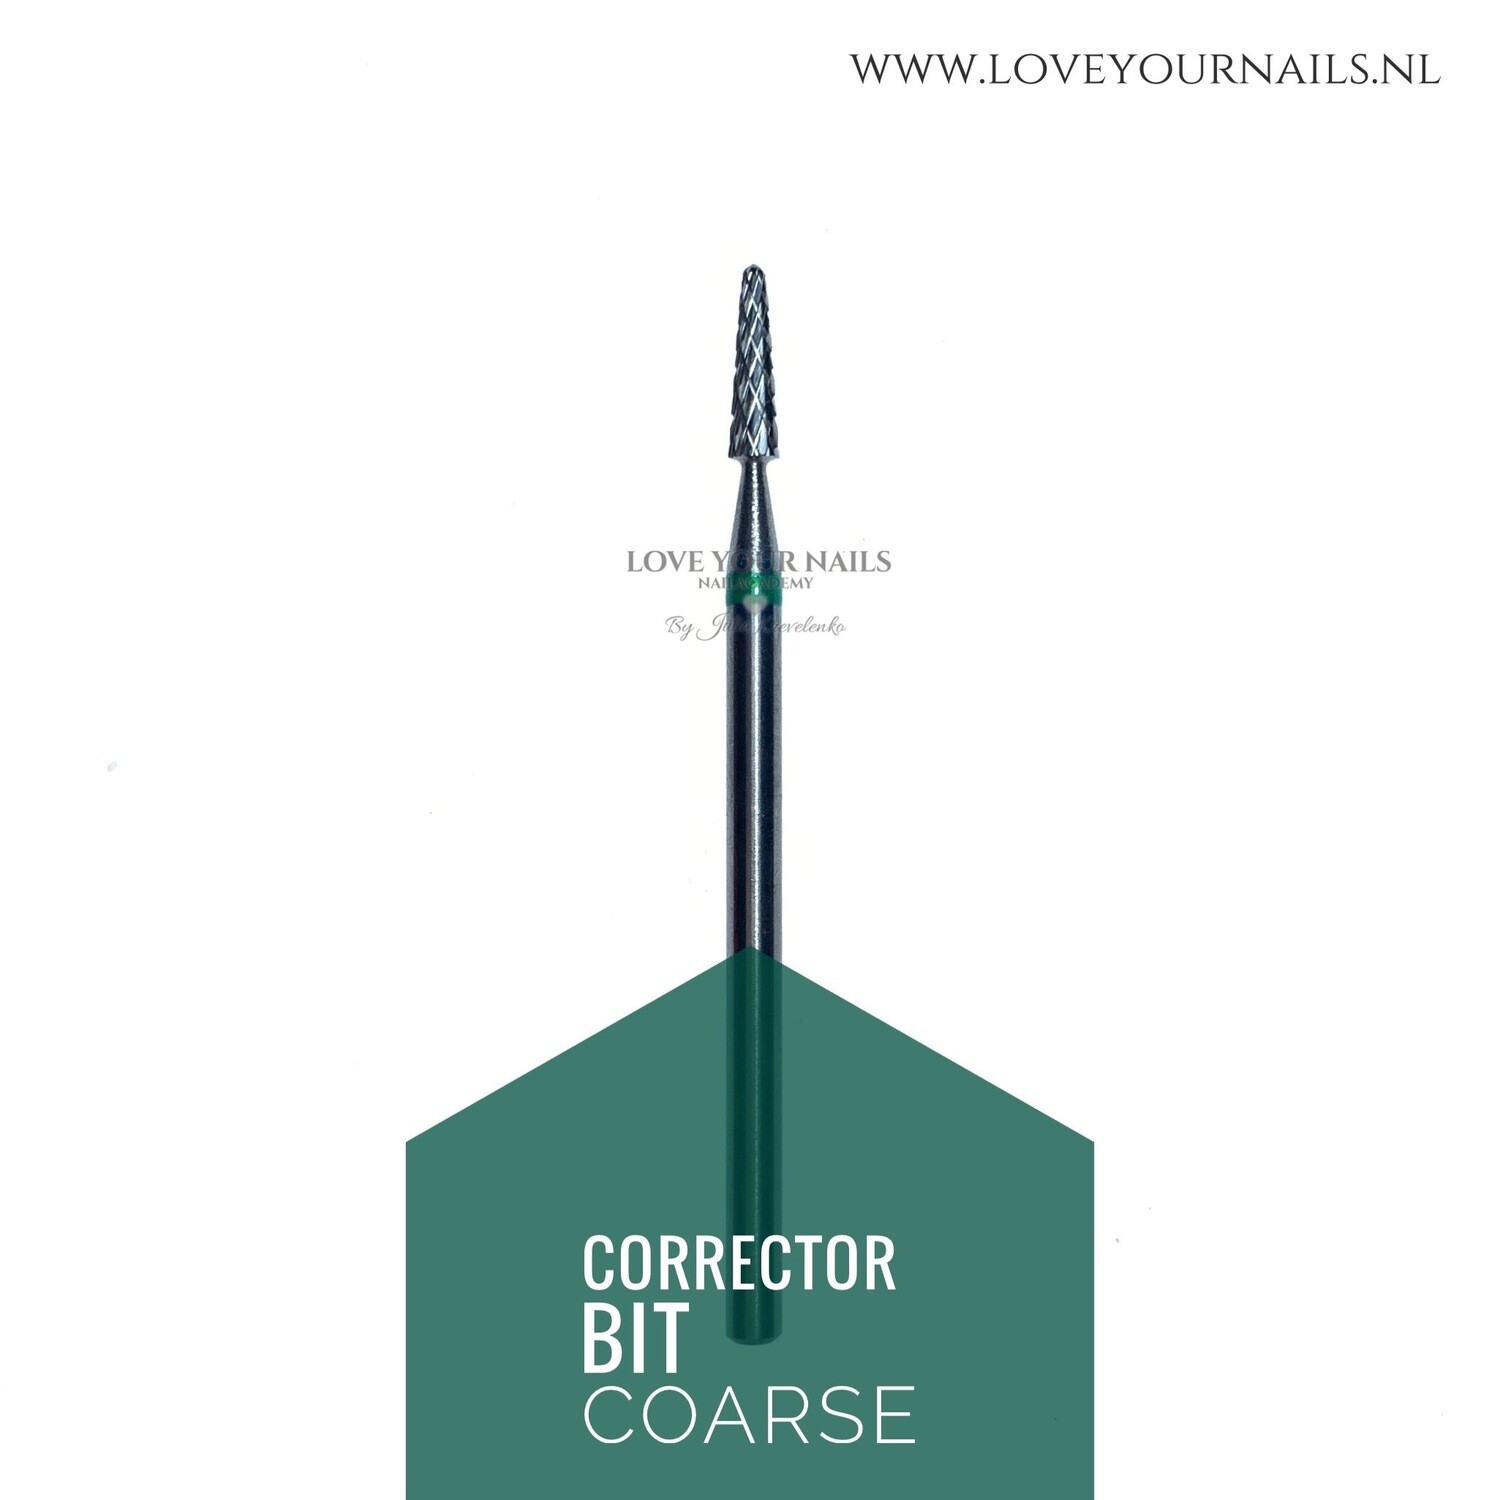 Carbid correction cone for cuticle area - coarse